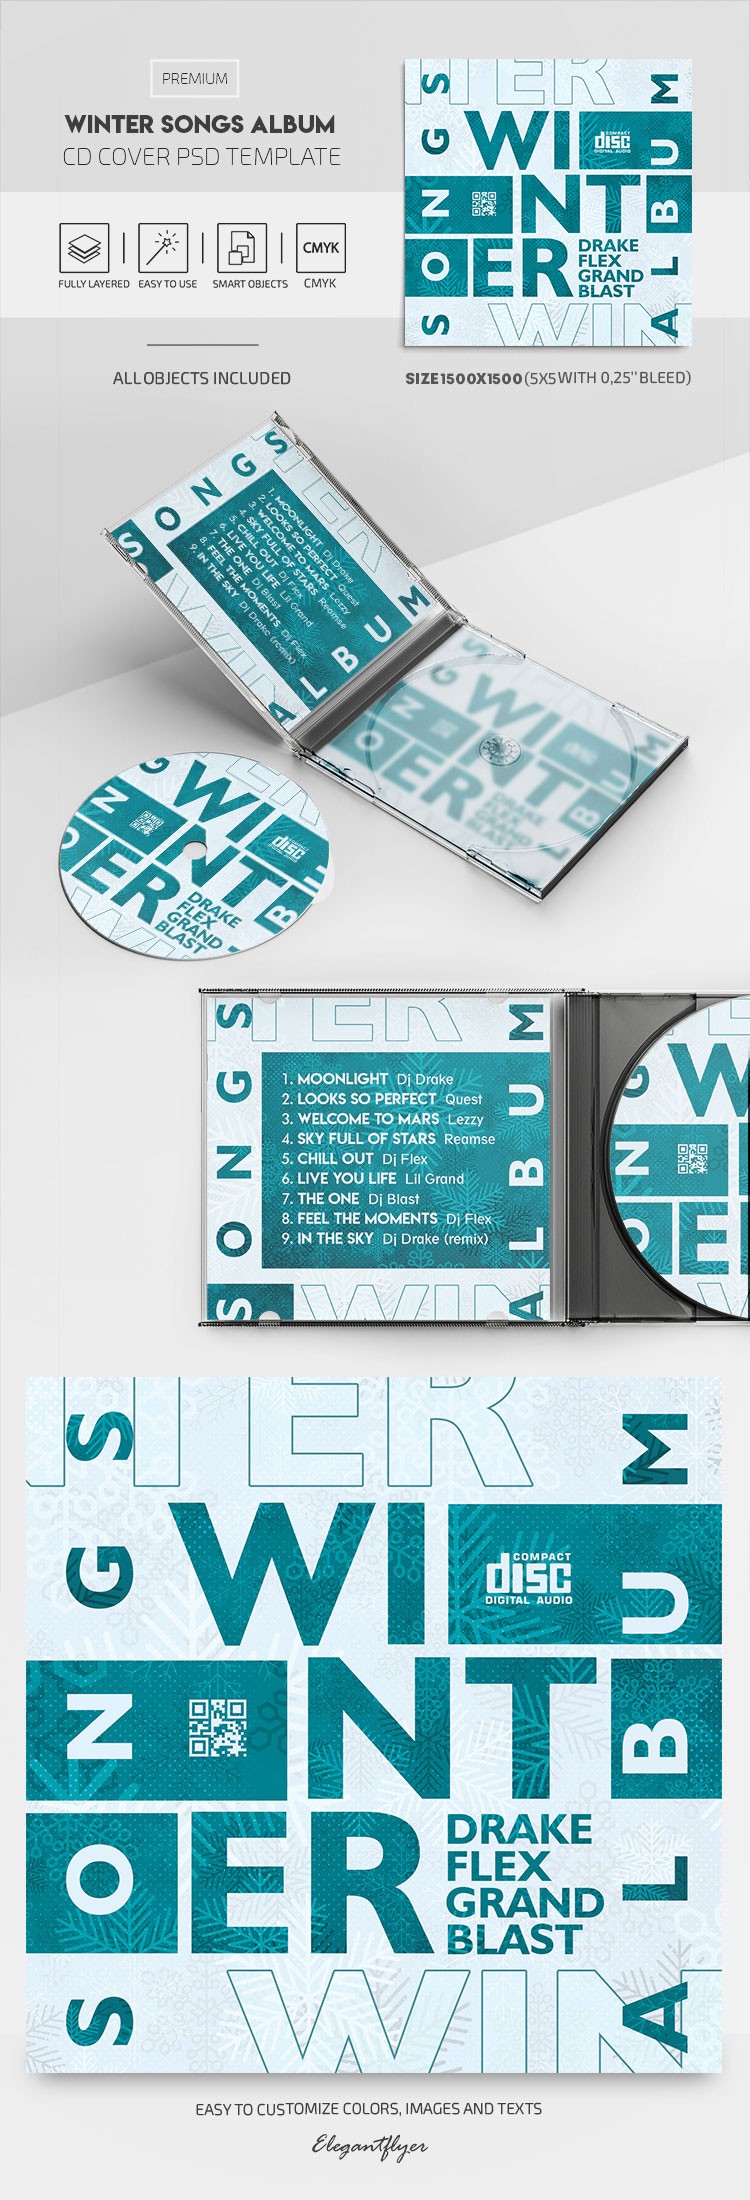 Winter Songs Album CD Cover by ElegantFlyer